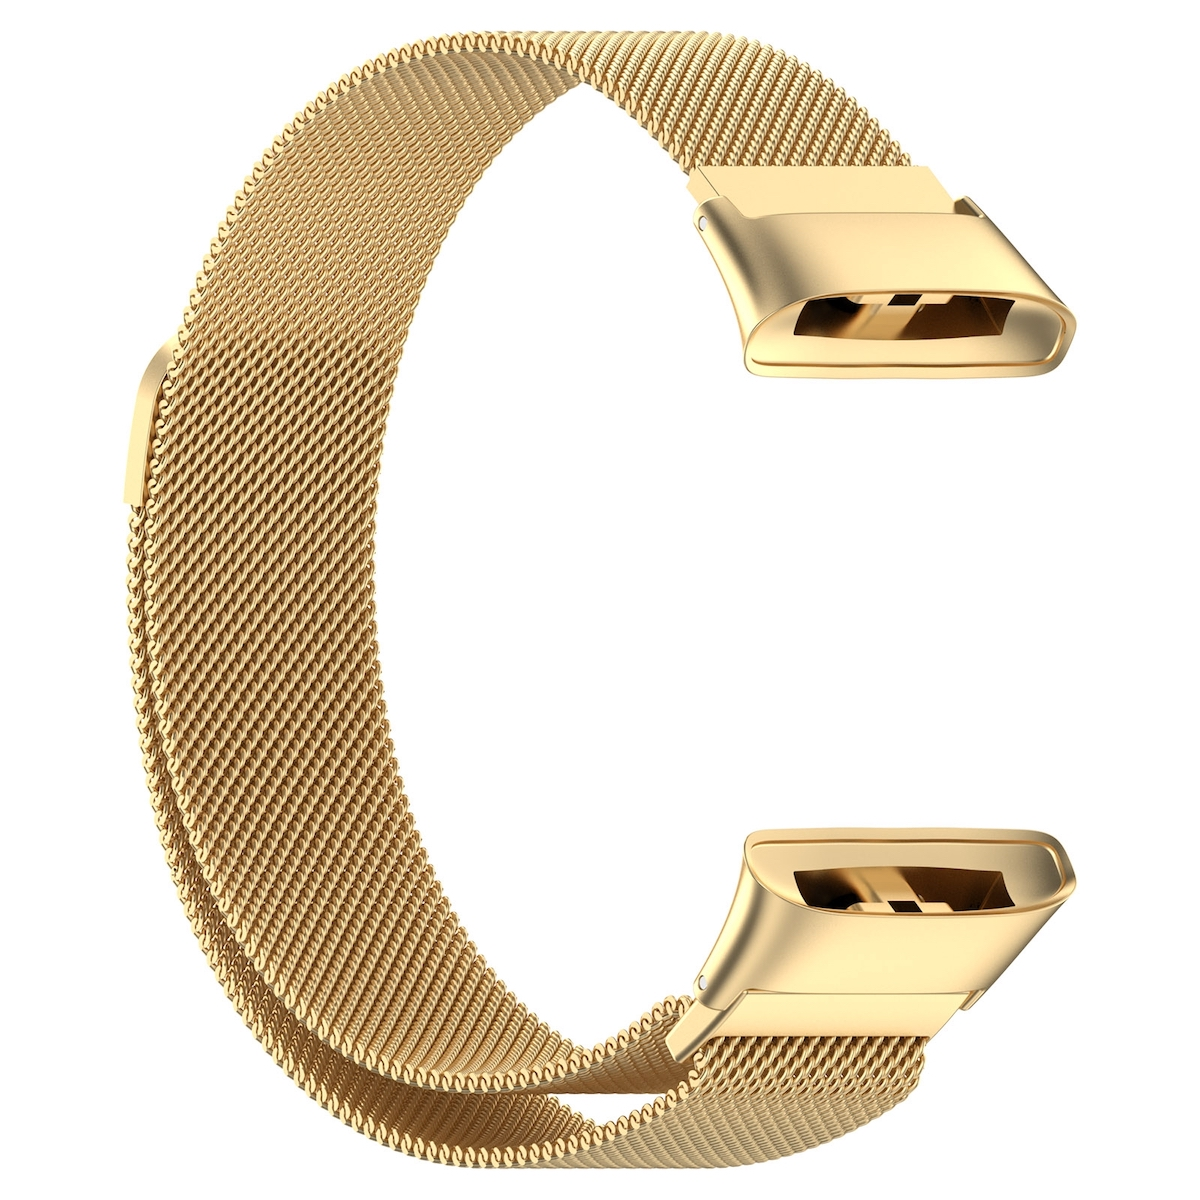 Magnetverschluss, Redmi 3, Xiaomi, Metall Band Gold Watch mit Design WIGENTO Ersatzarmband,